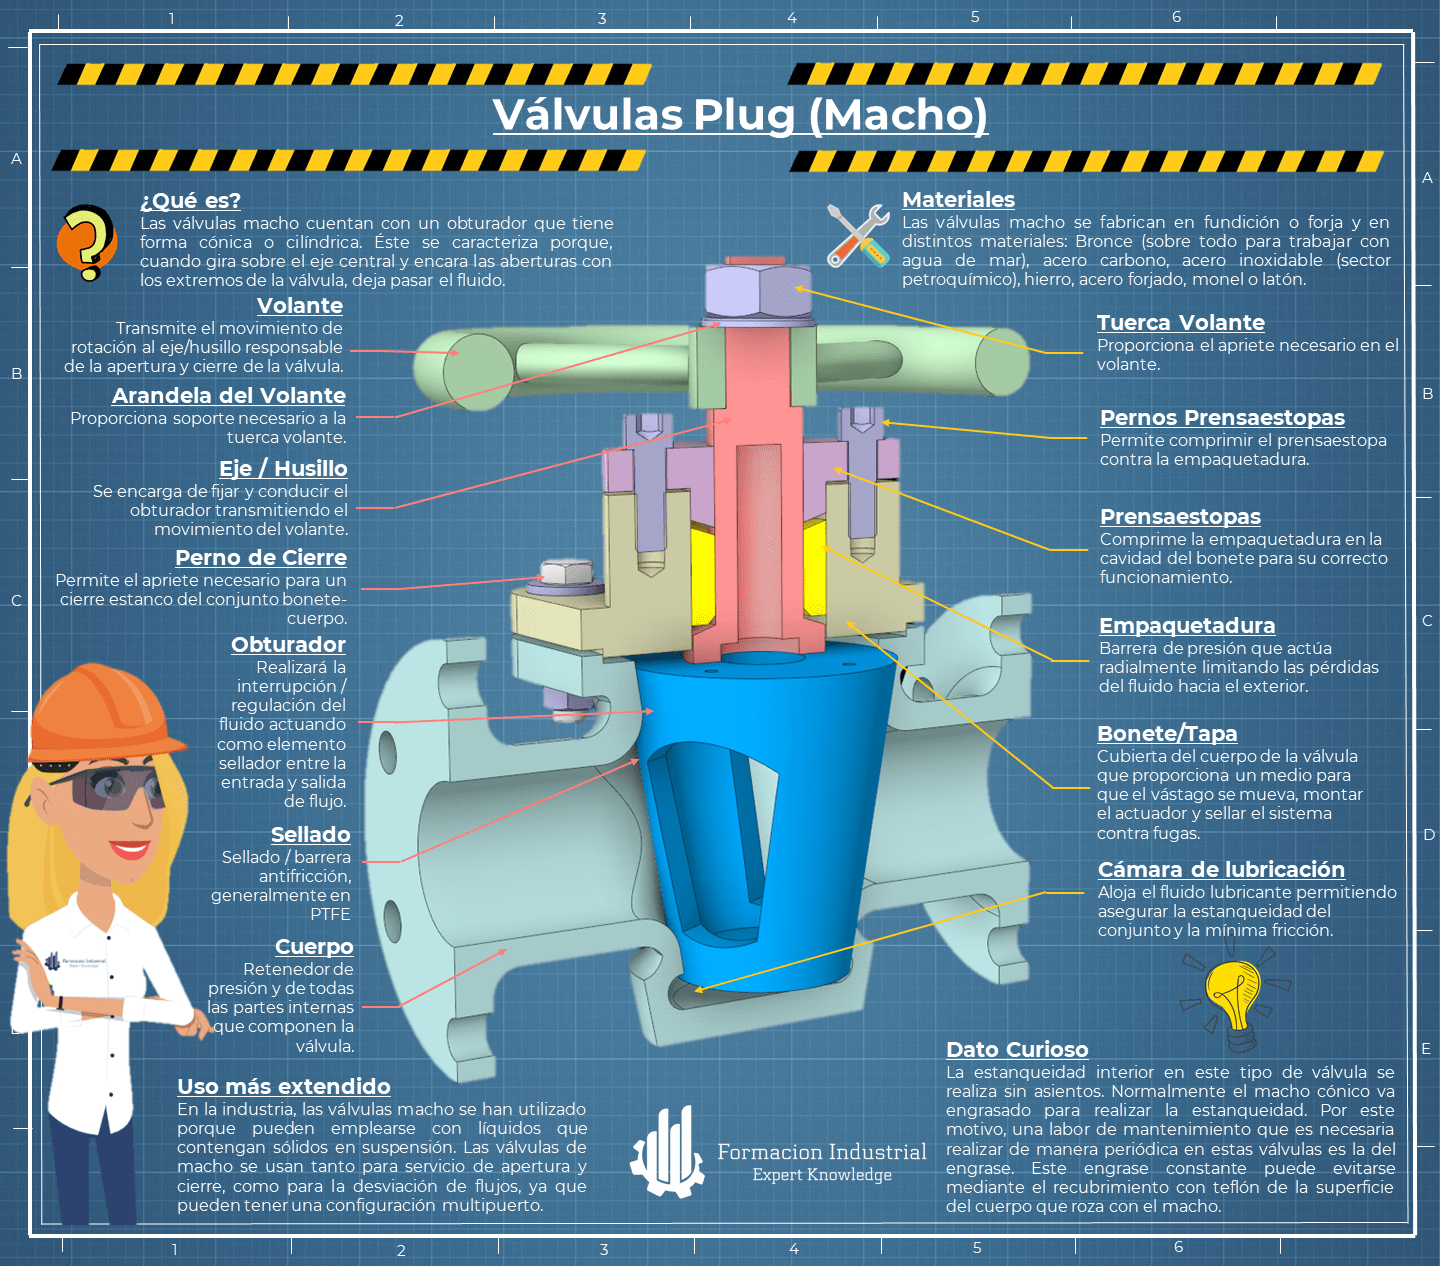 Infografía detallada de las válvulas macho y su funcionamiento en diferentes entornos industriales